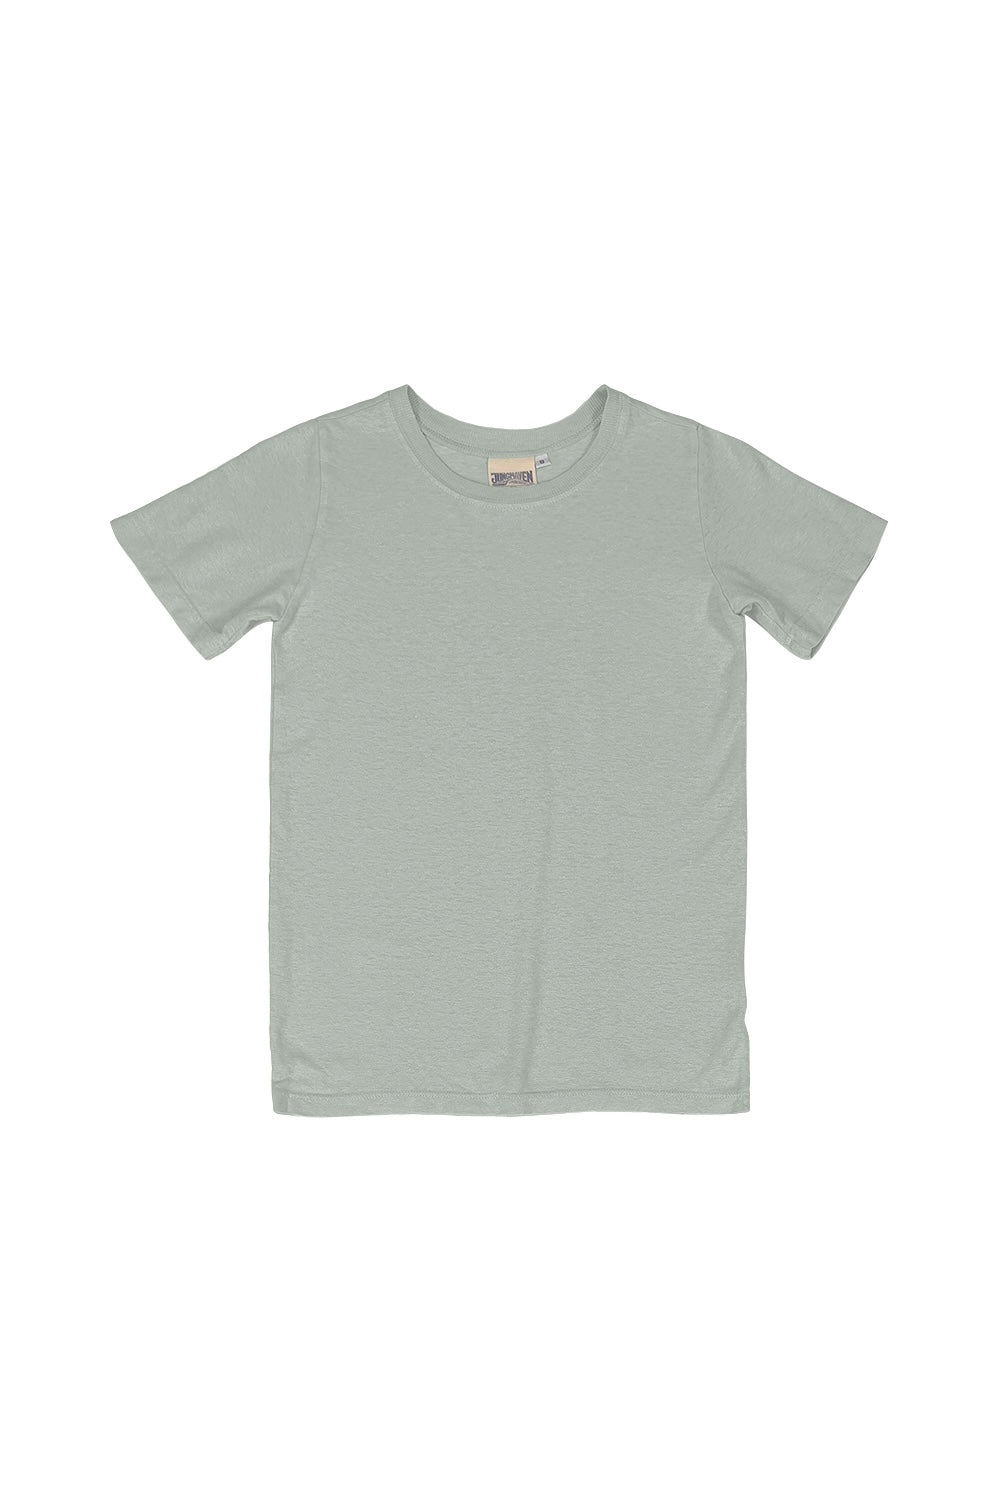 Childrens Hemp Short Sleeve T-Shirt - Hemp Clothing, Marcel Hemp